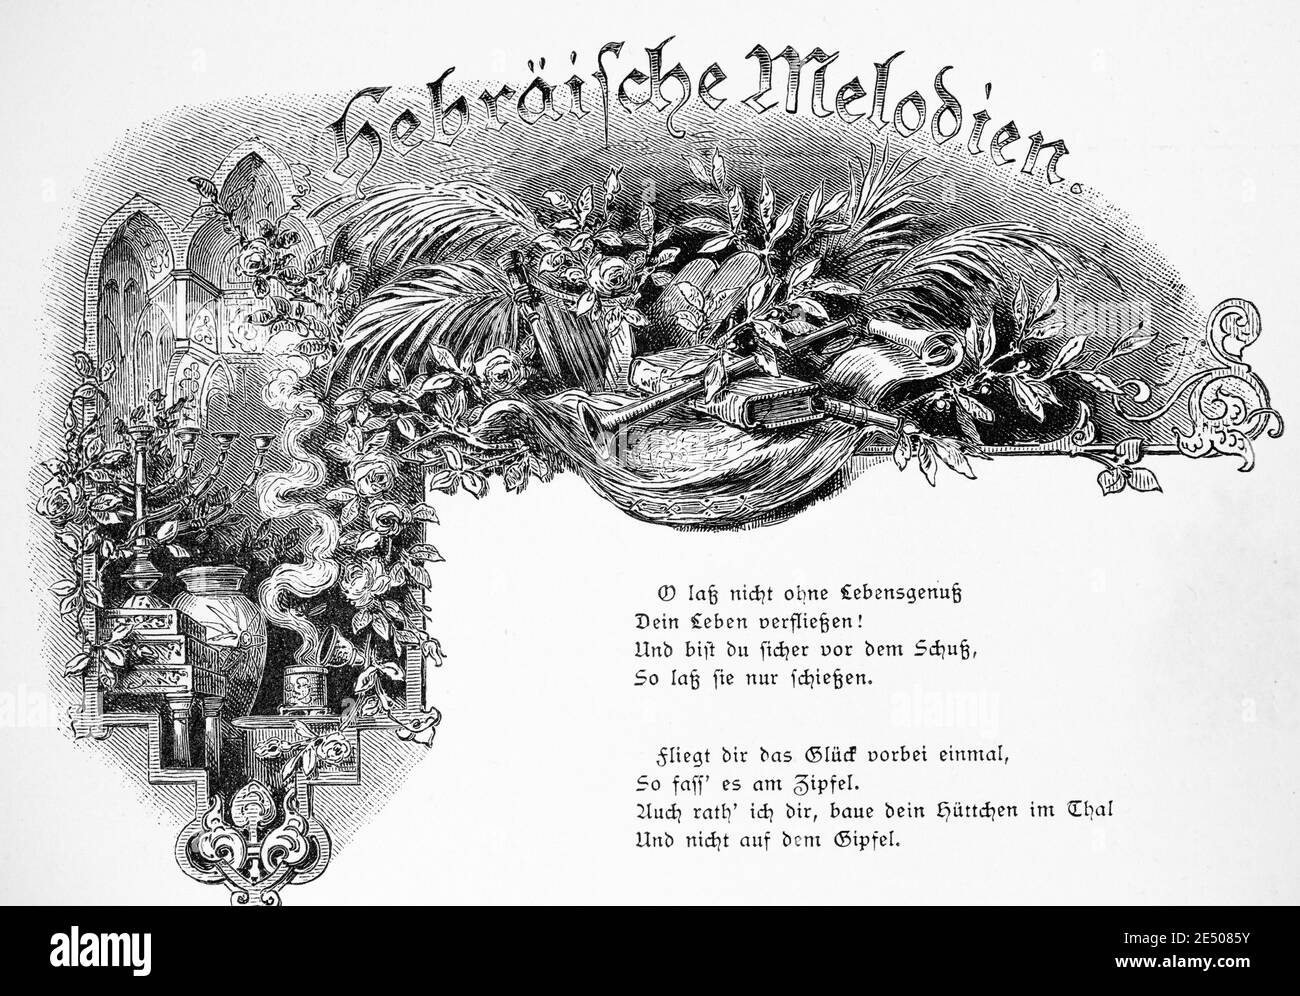 Ilustración de Heine´s poema 'Hegräische Melodien' o melodías hebreas, escritor y poeta alemán Heinrich Heine, colección de poemas Romancero, 1880 Foto de stock